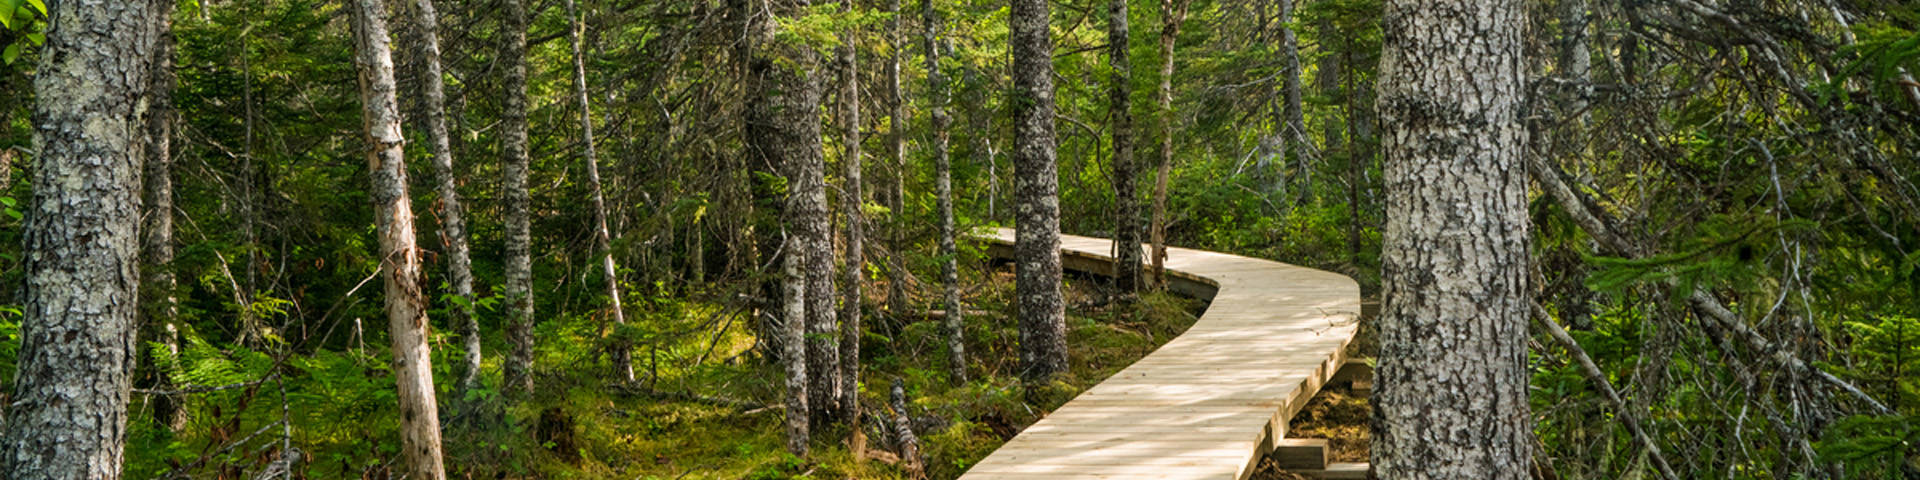 a wooden boardwalk winding through a forest.